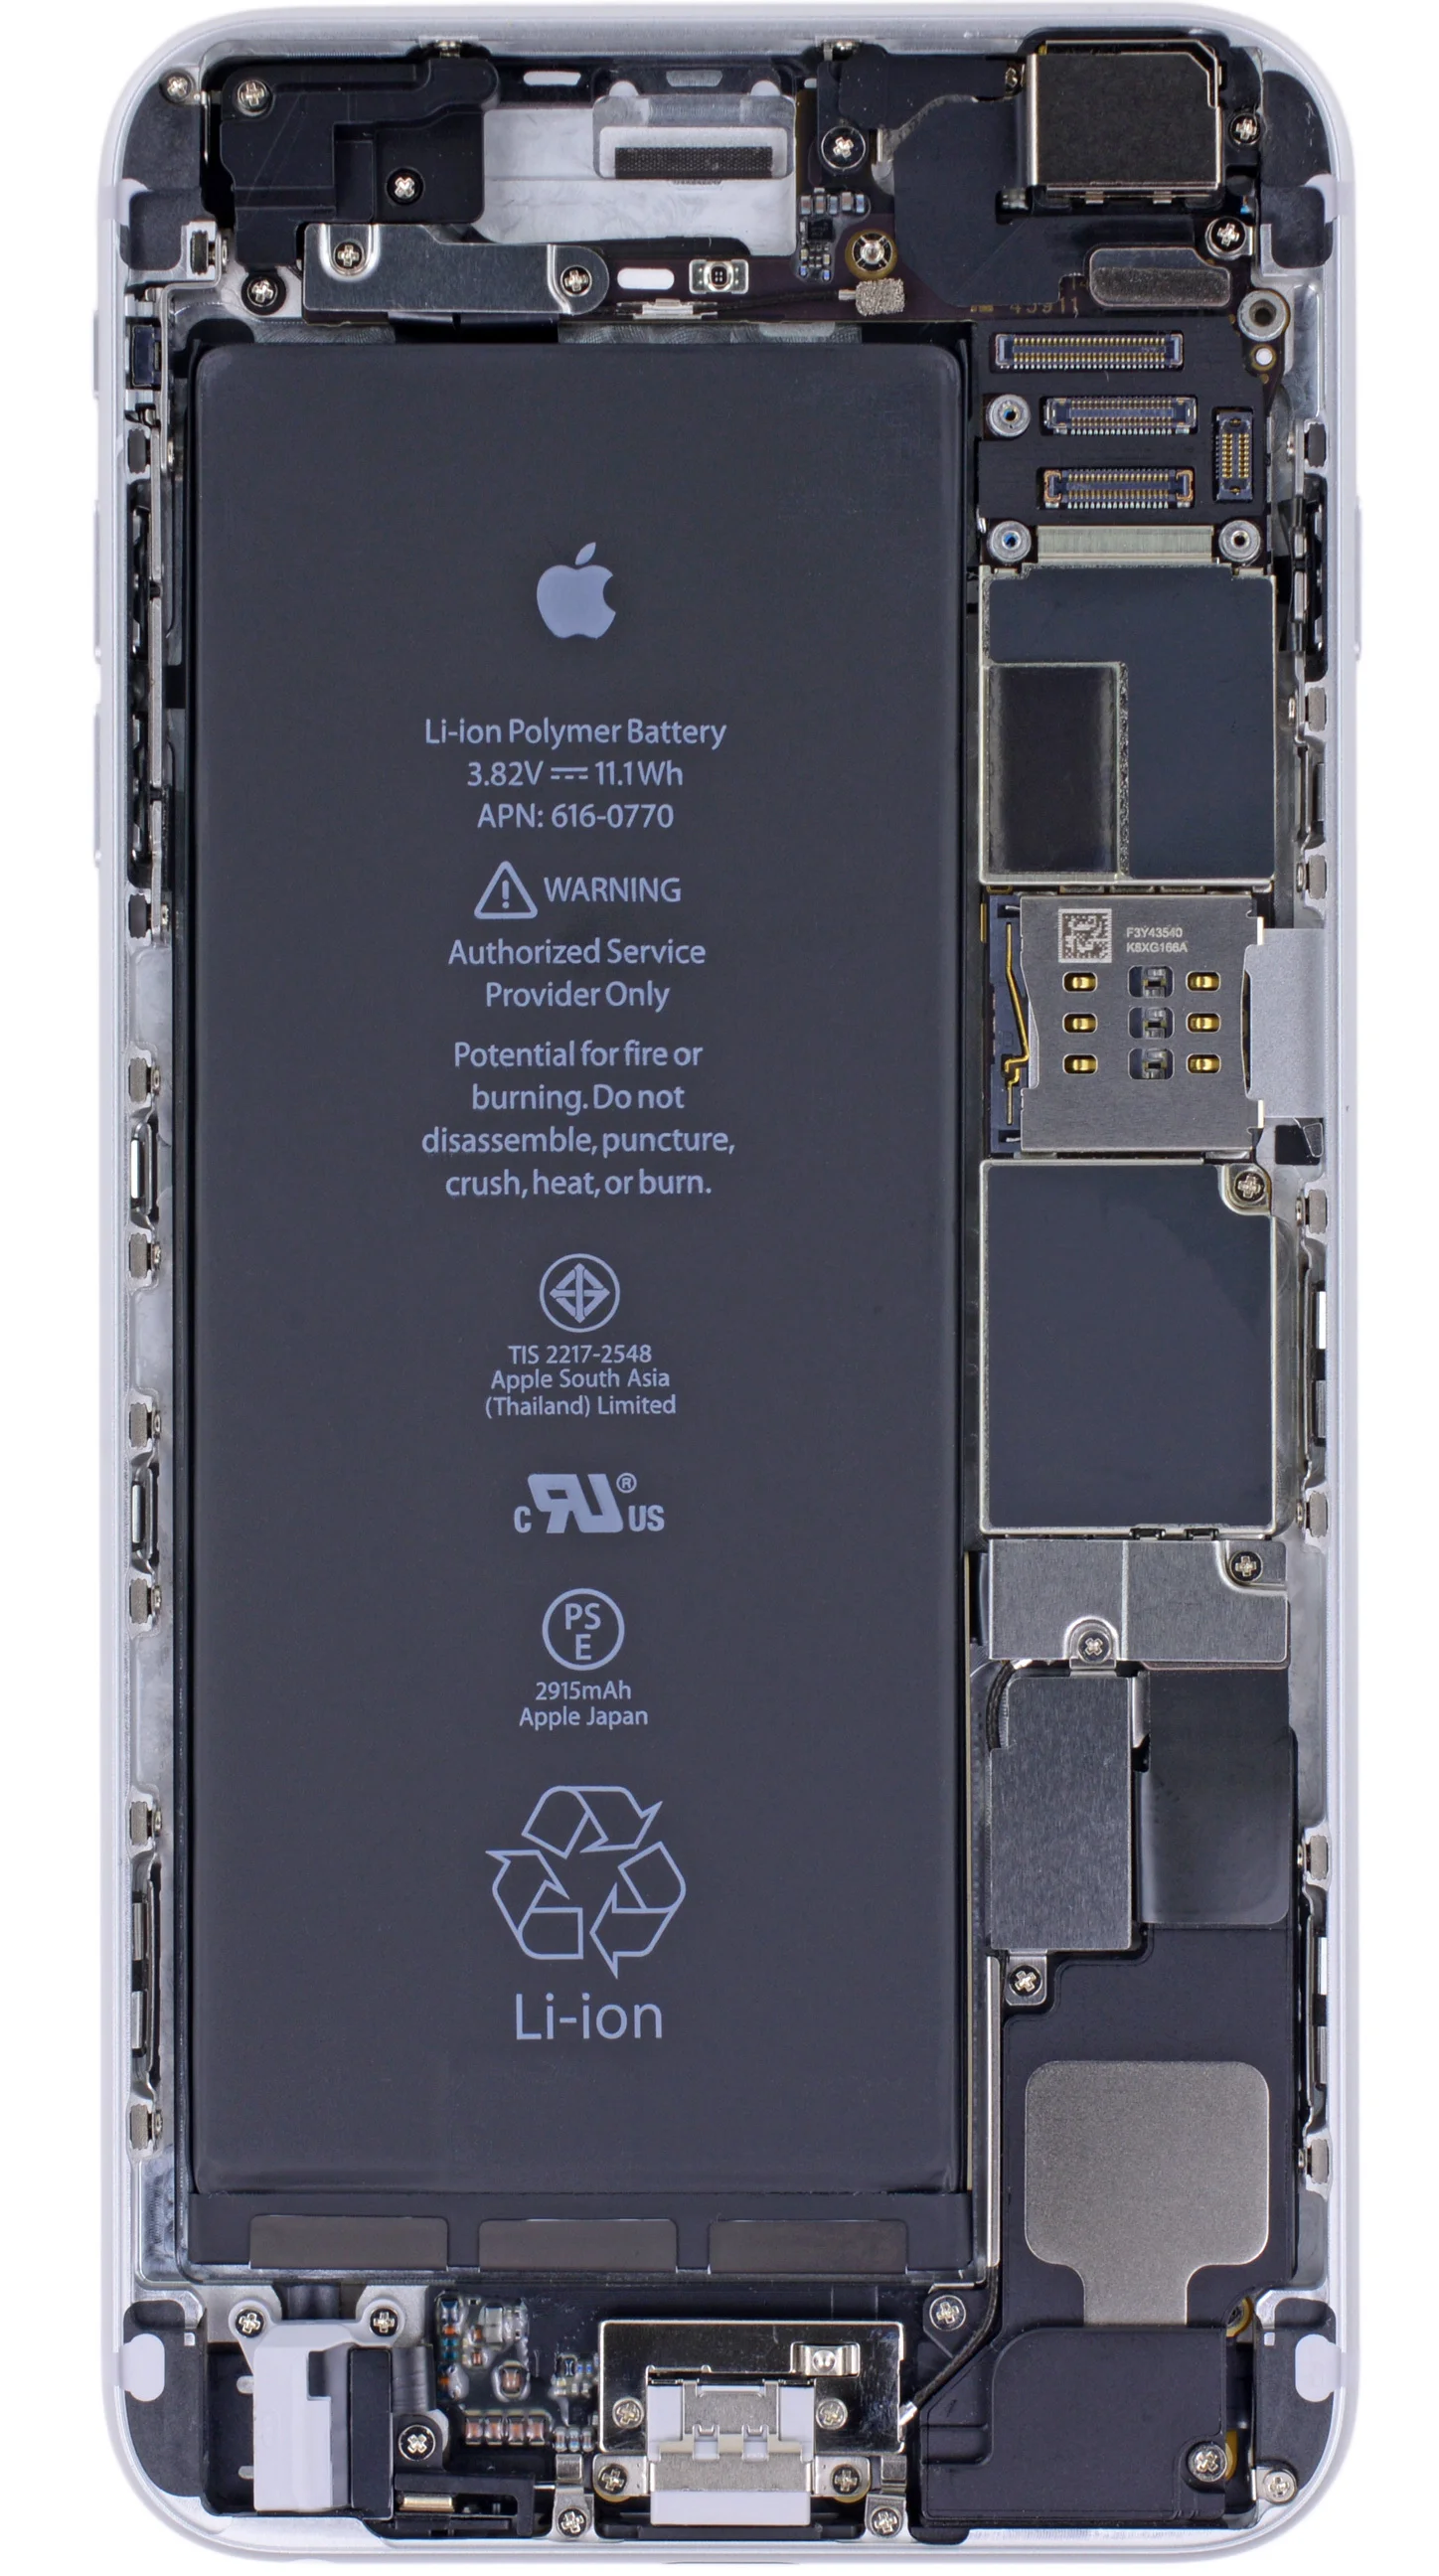 iPhone 11 Pro Max bị bắn xuyên thủng một lỗ nhưng vẫn hoạt động bình thường